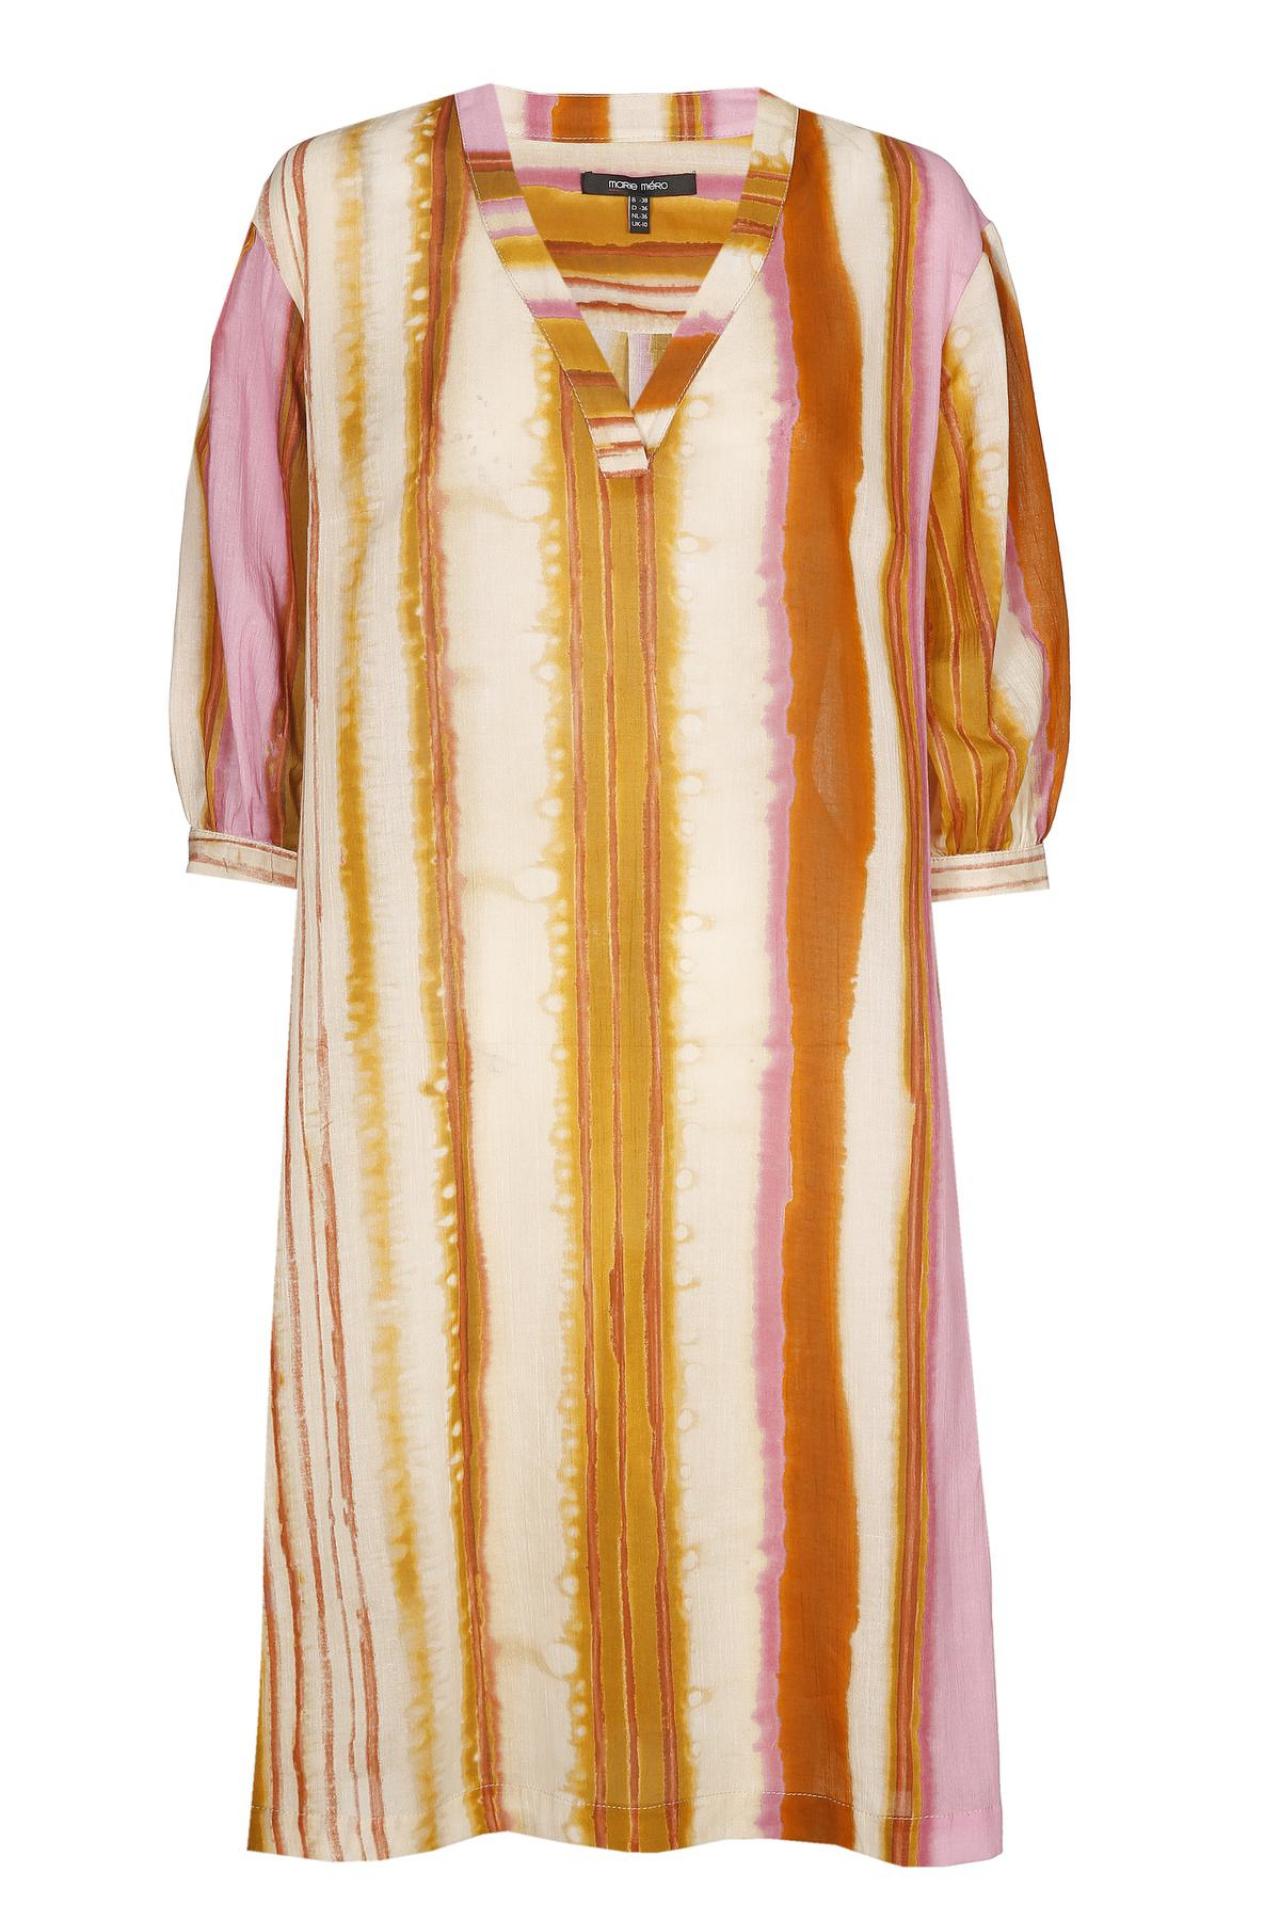 Rechte jurk met uitgelopen strepen (225 euro), van Marie Méro.